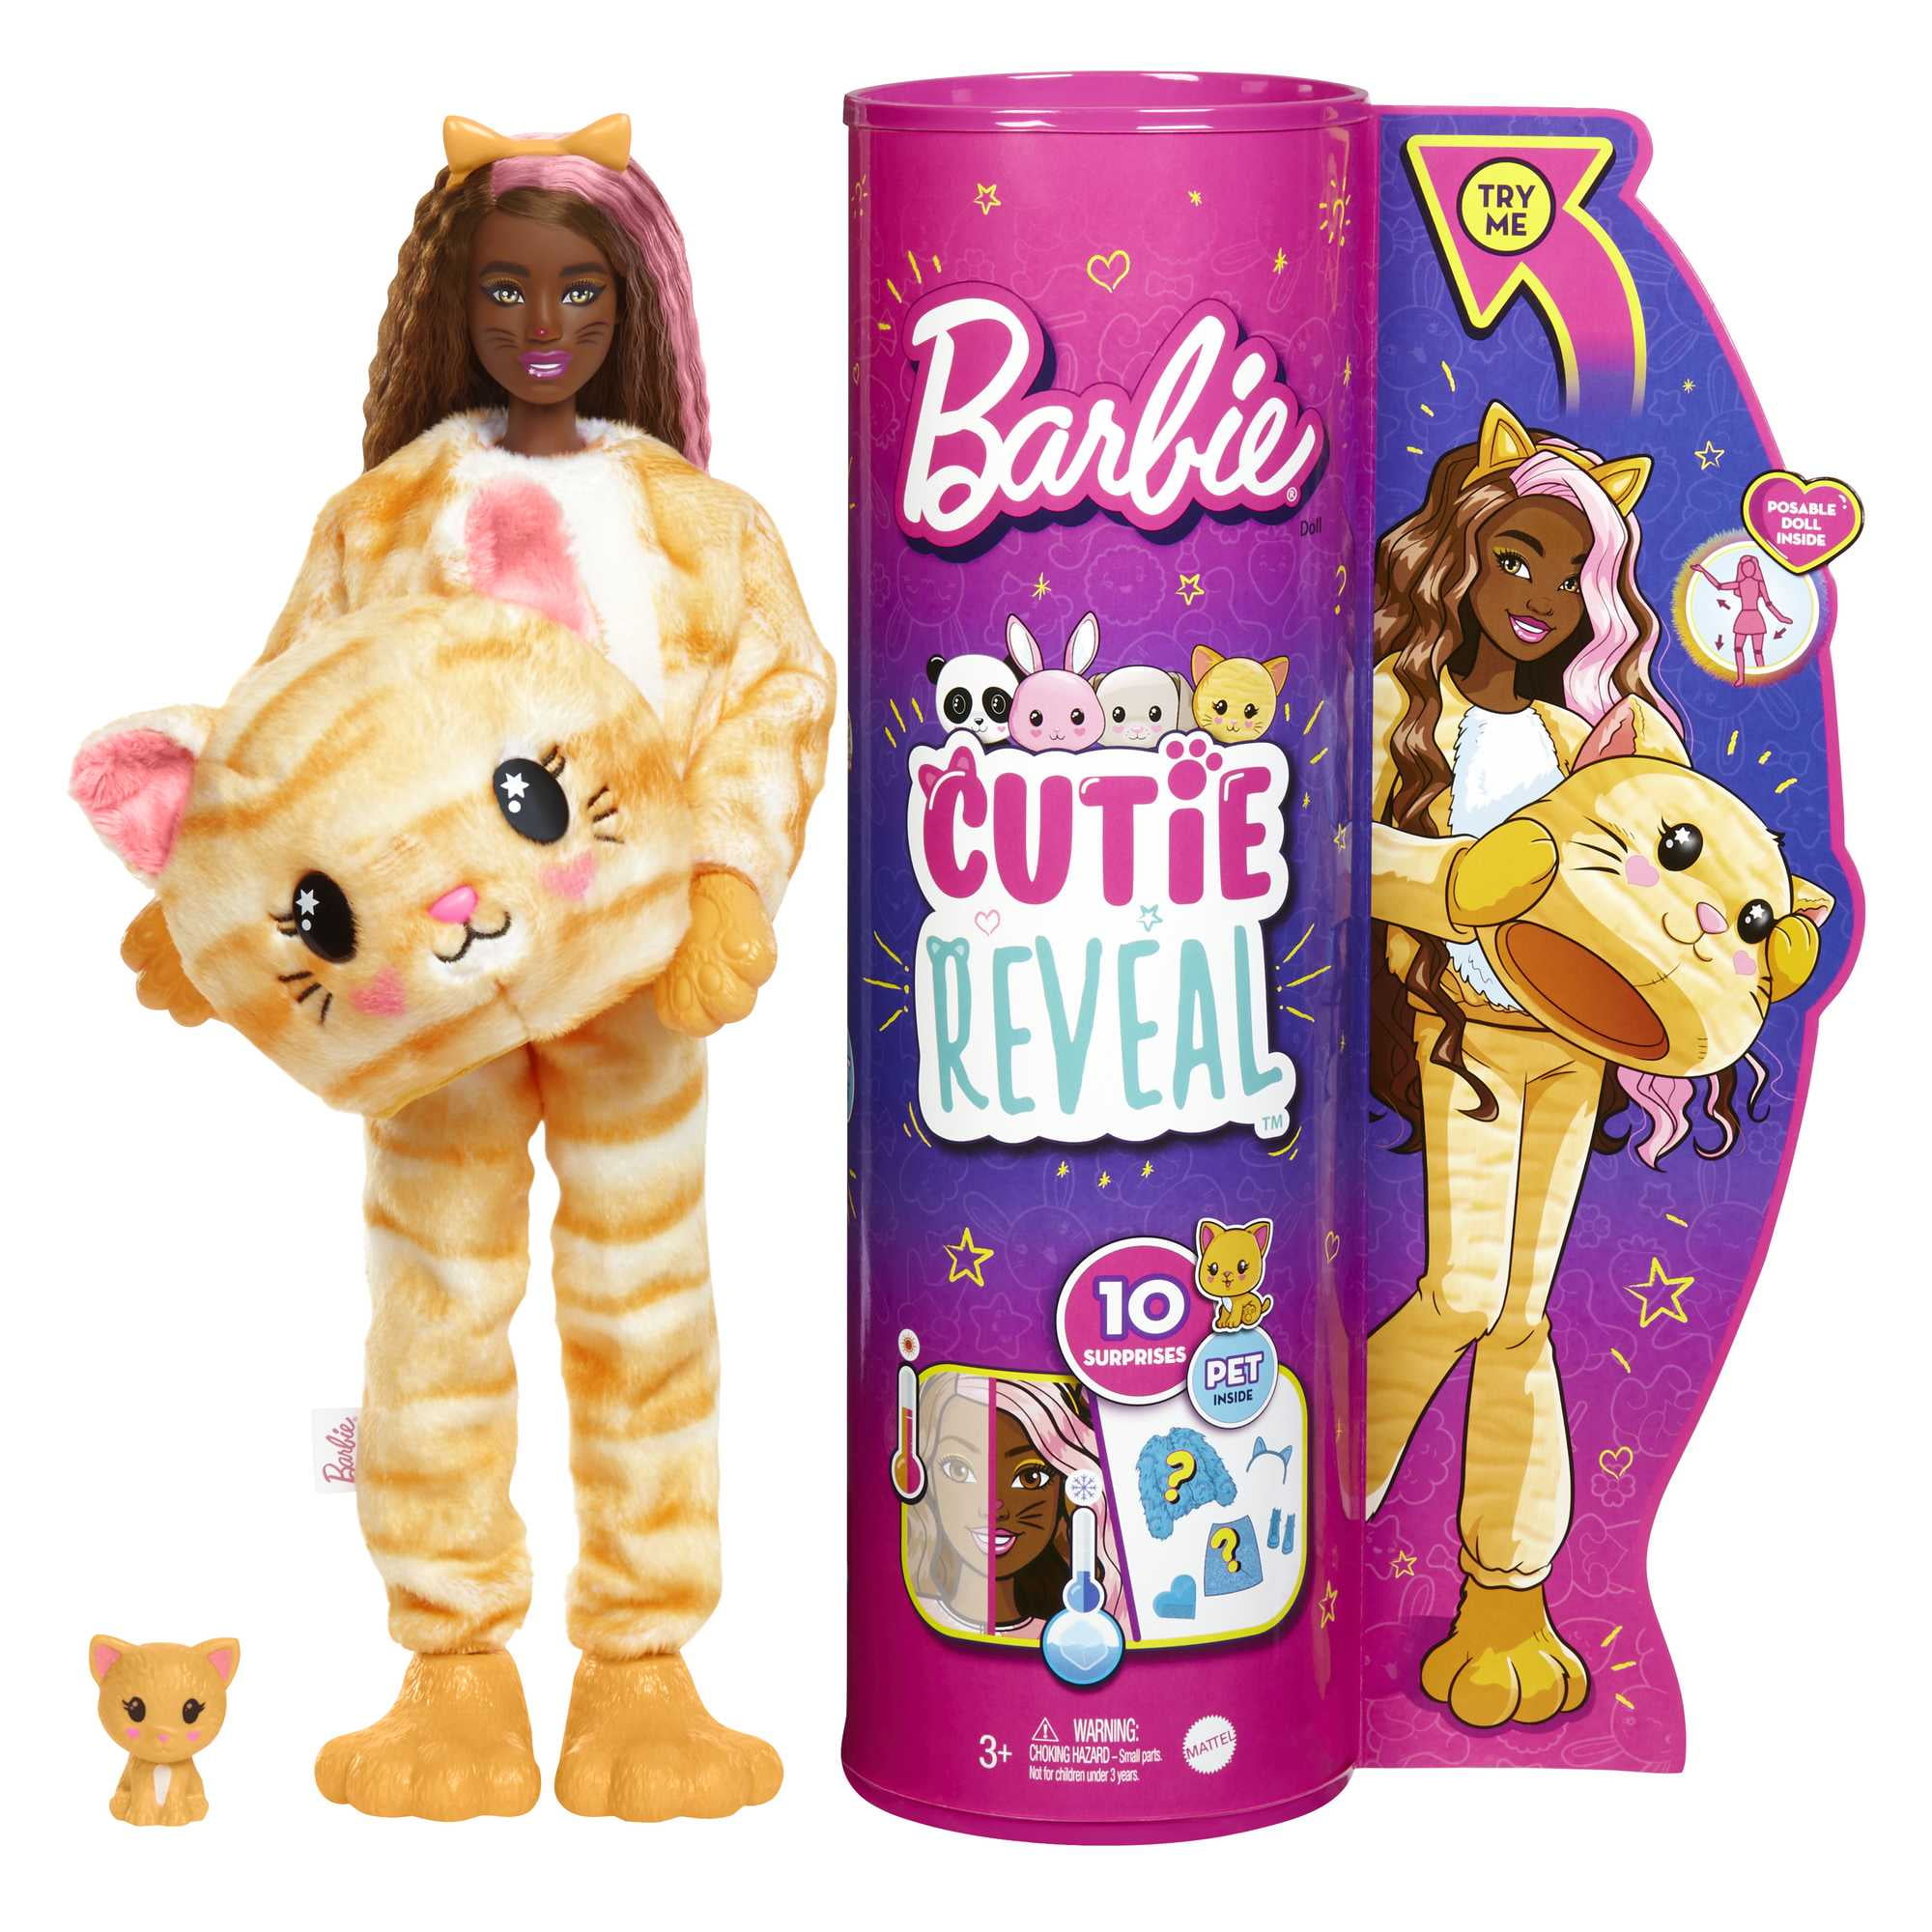 Aerobics Barbie Dog Costume